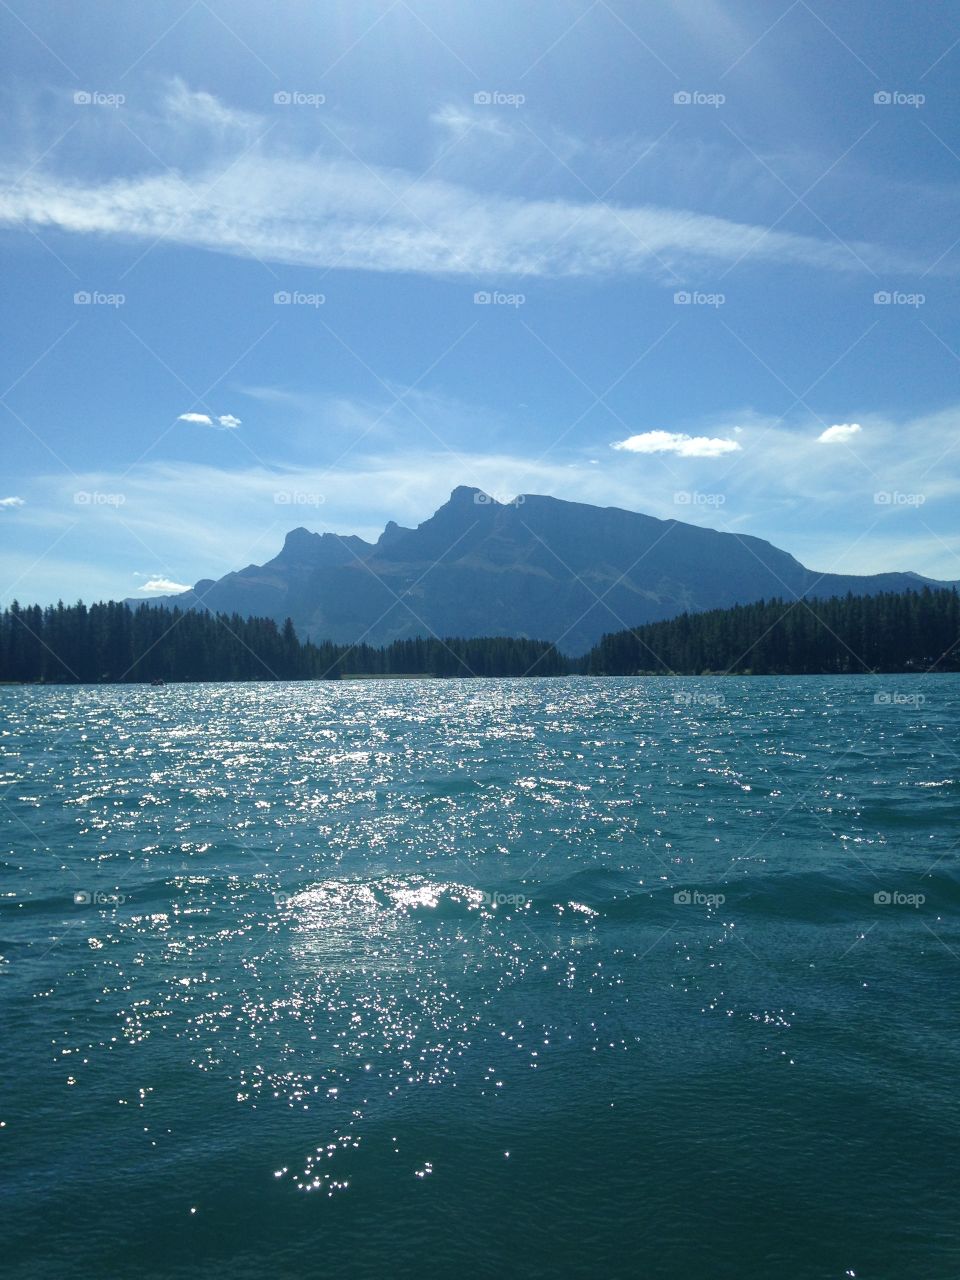 Views of the lake 